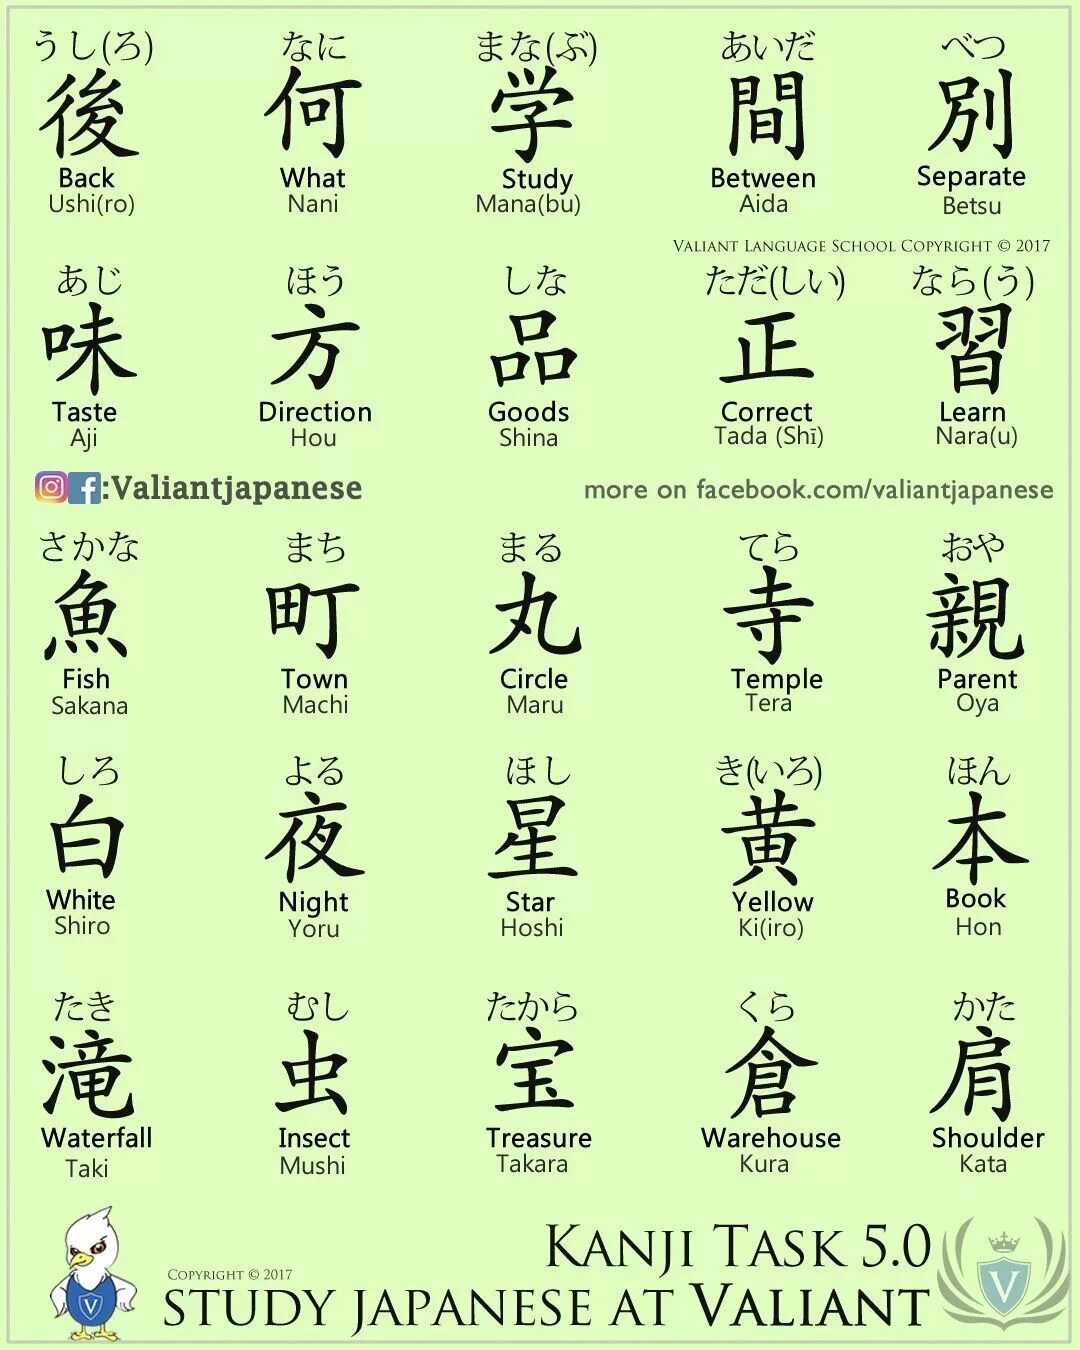 Перевести иероглифы по фото. Японский язык иероглифы кандзи. Иероглифы кандзи с произношением. Кандзи японские иероглифы с переводом. Китайские иероглифы и их обозначения.